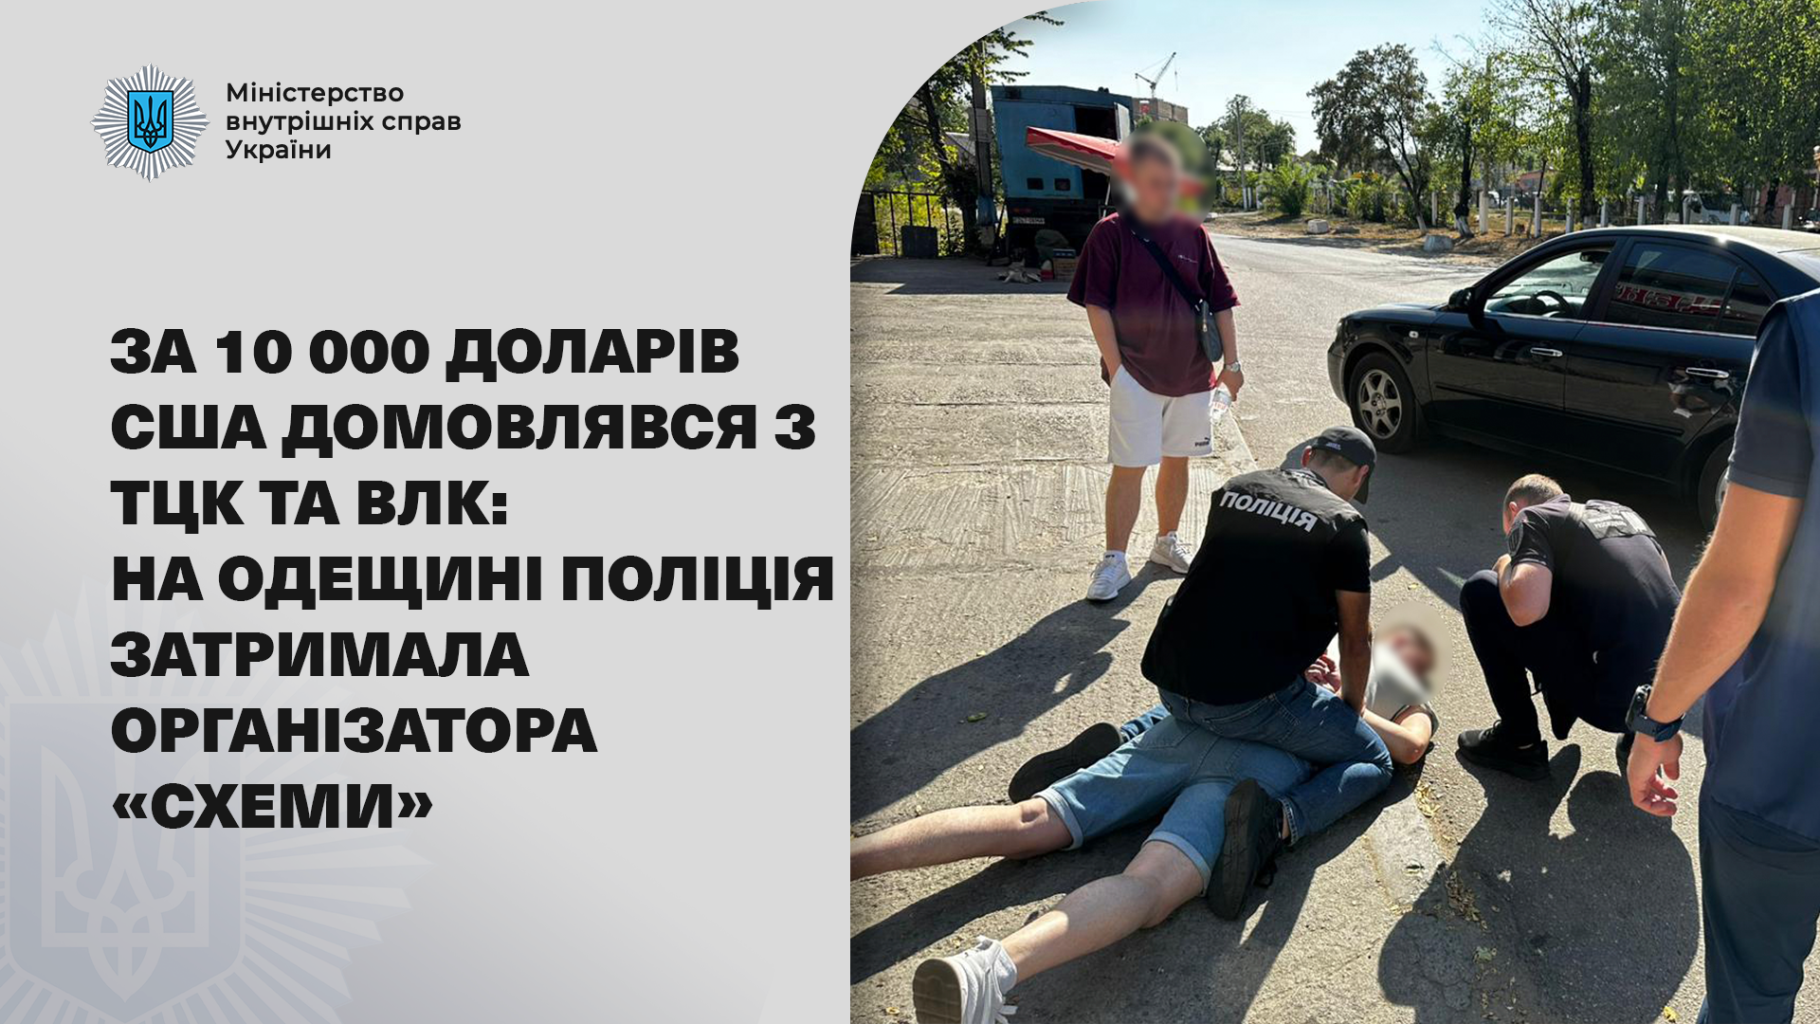 За 10 000 доларів США домовлявся з ТЦК та ВЛК: на Одещині поліція затримала організатора «схеми»